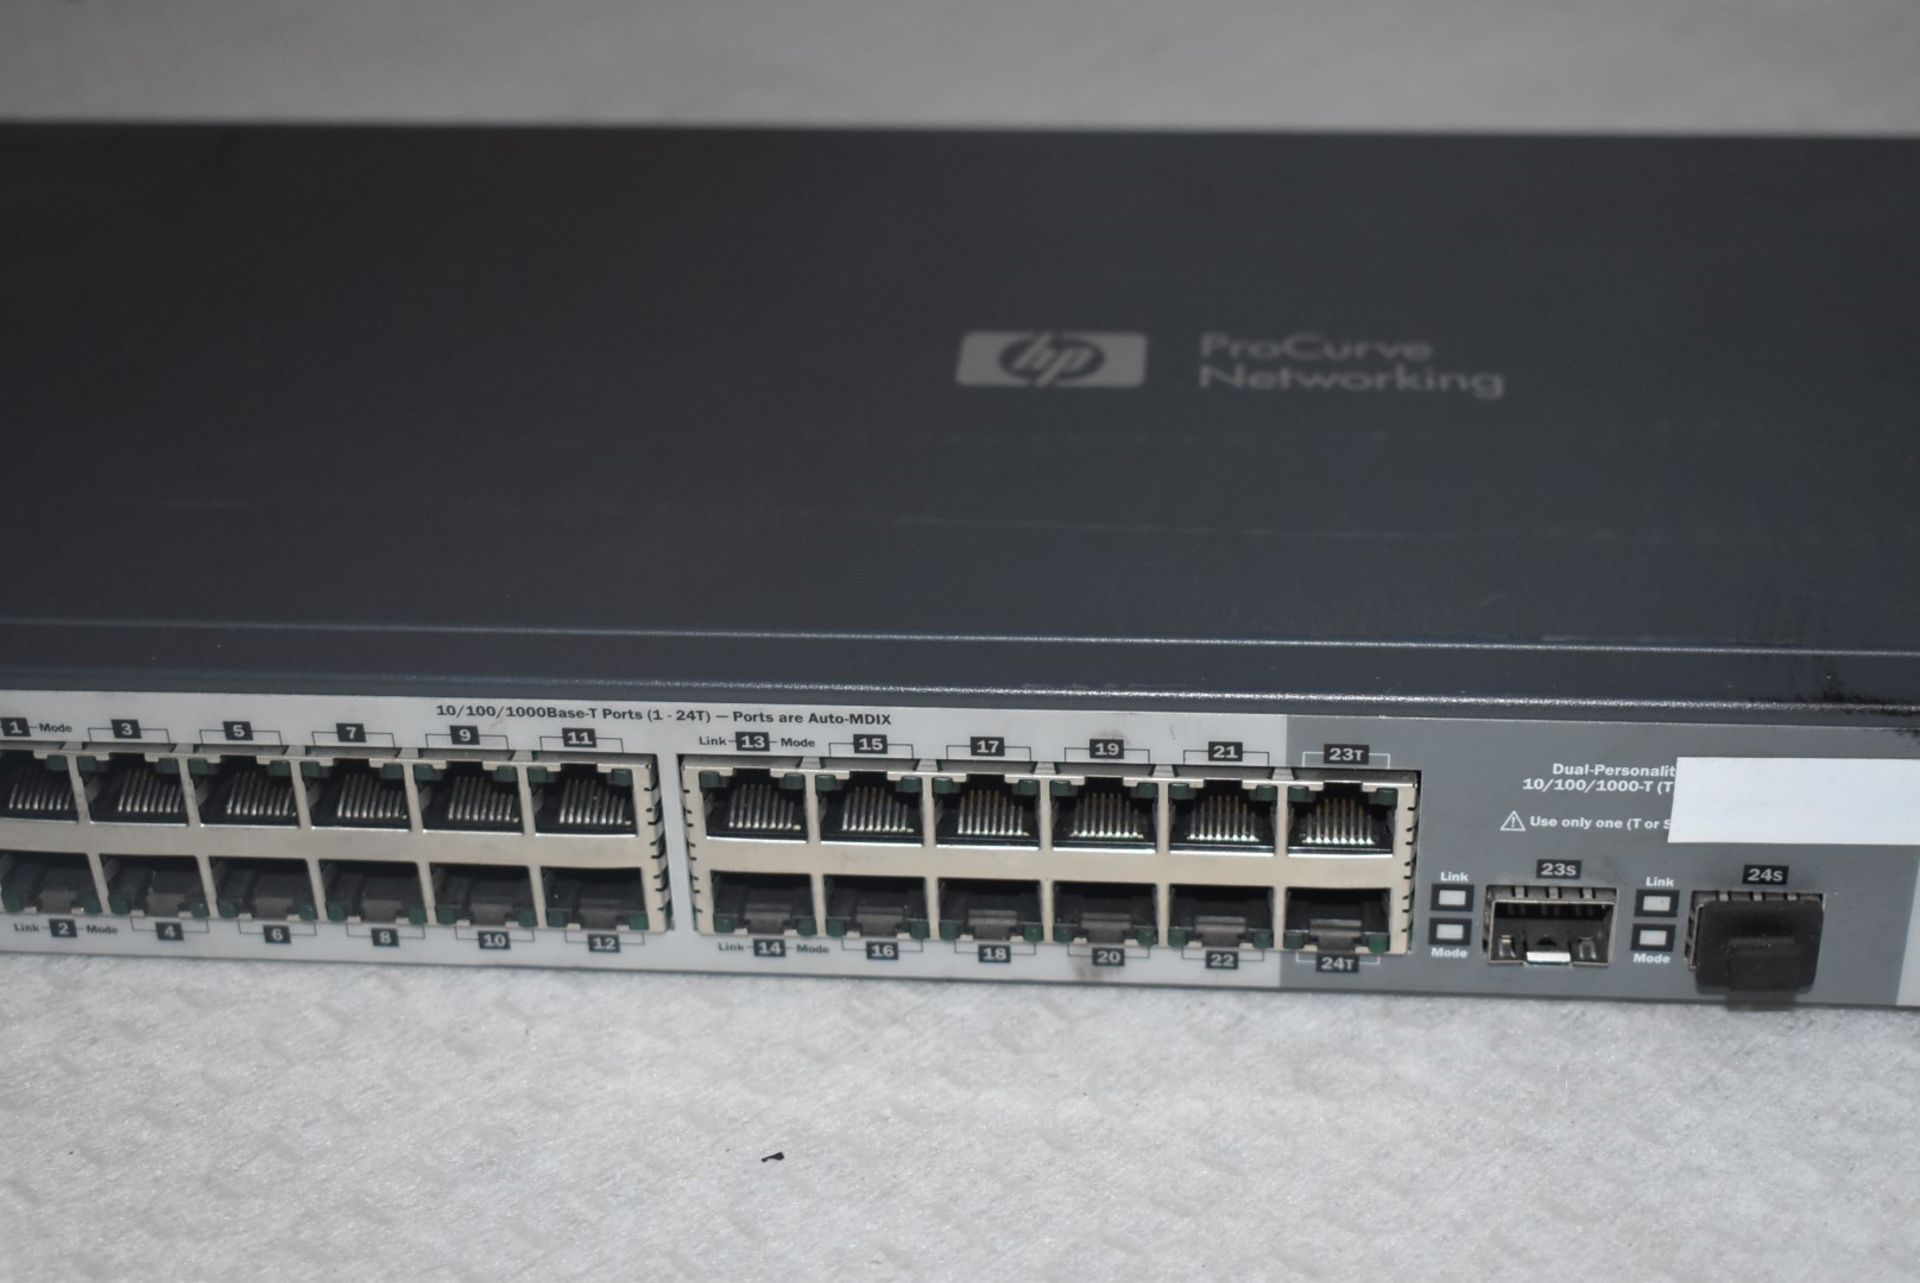 1 x HP Procurve 1810G 24 Port J9450A Switch - Image 2 of 6